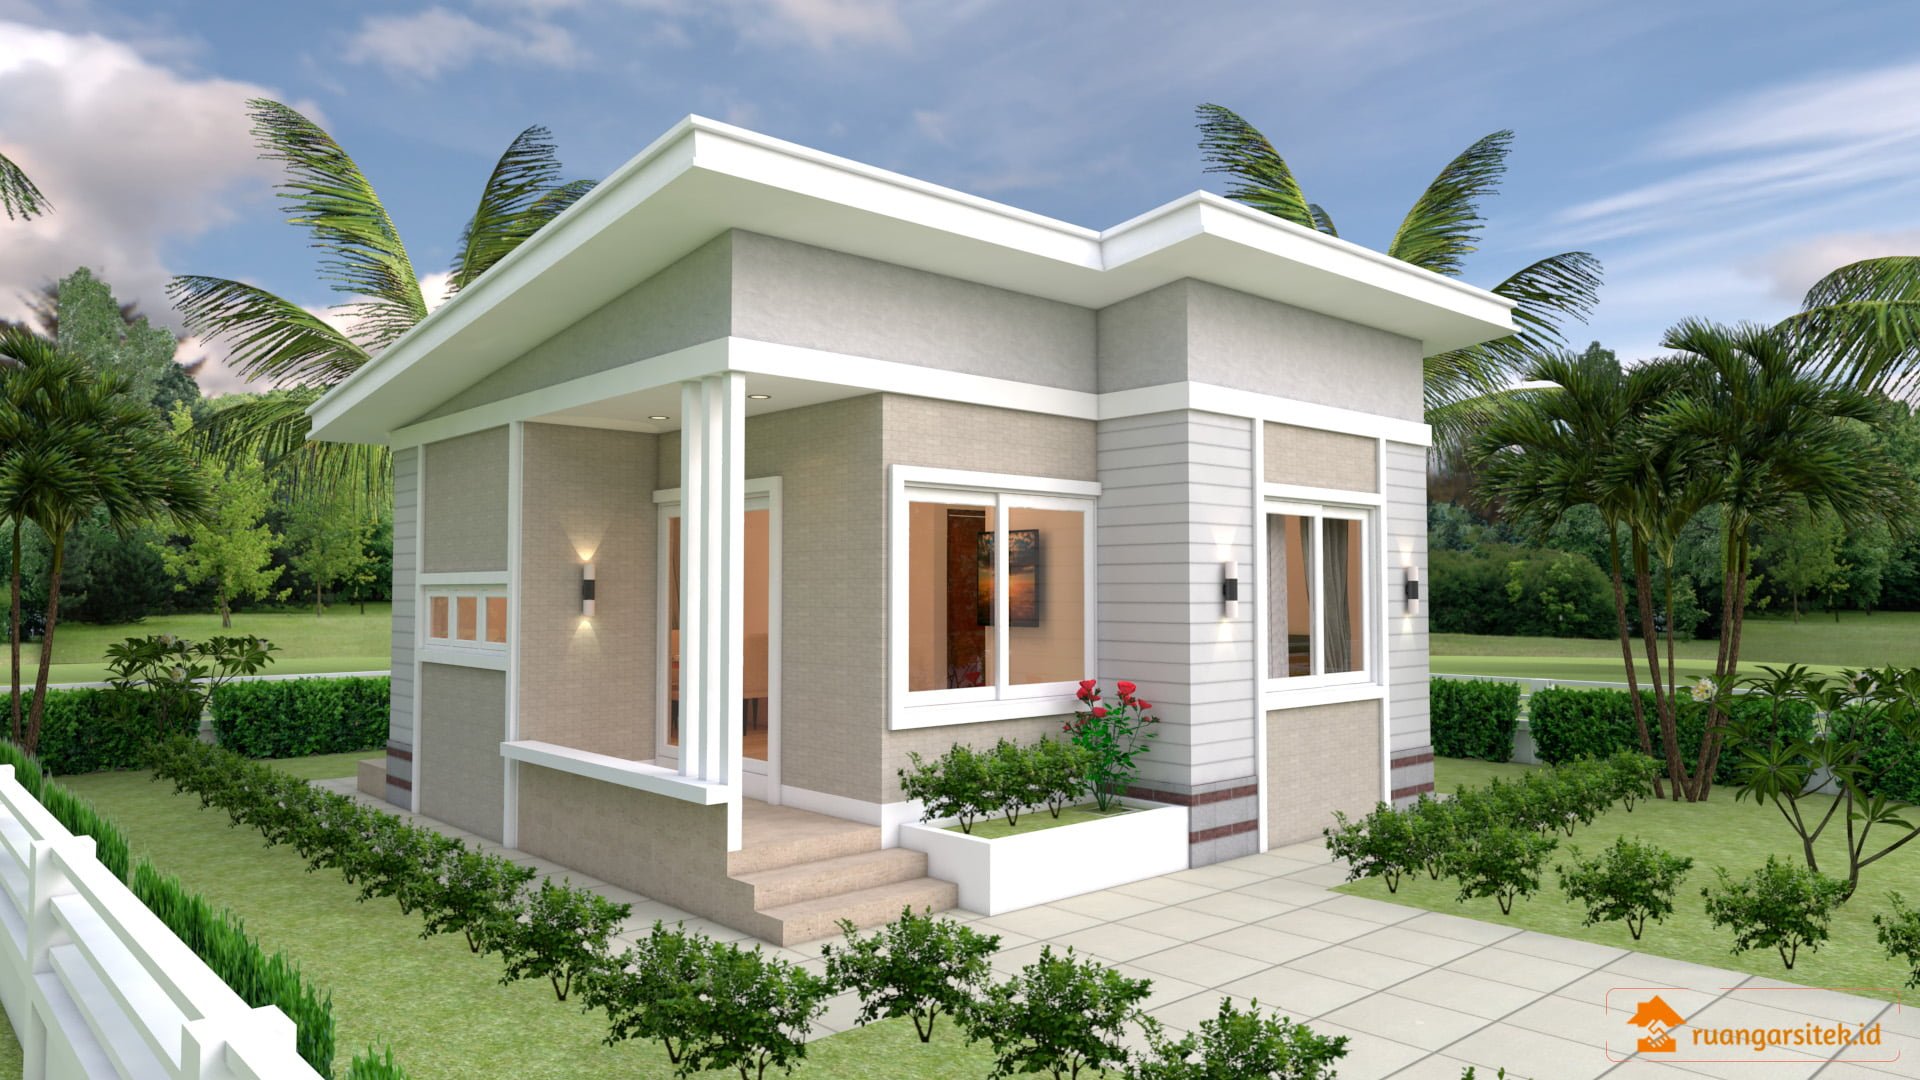 61 Inspirasi Desain Rumah Minimalis 6x9 Tampak Depan Paling Diminati